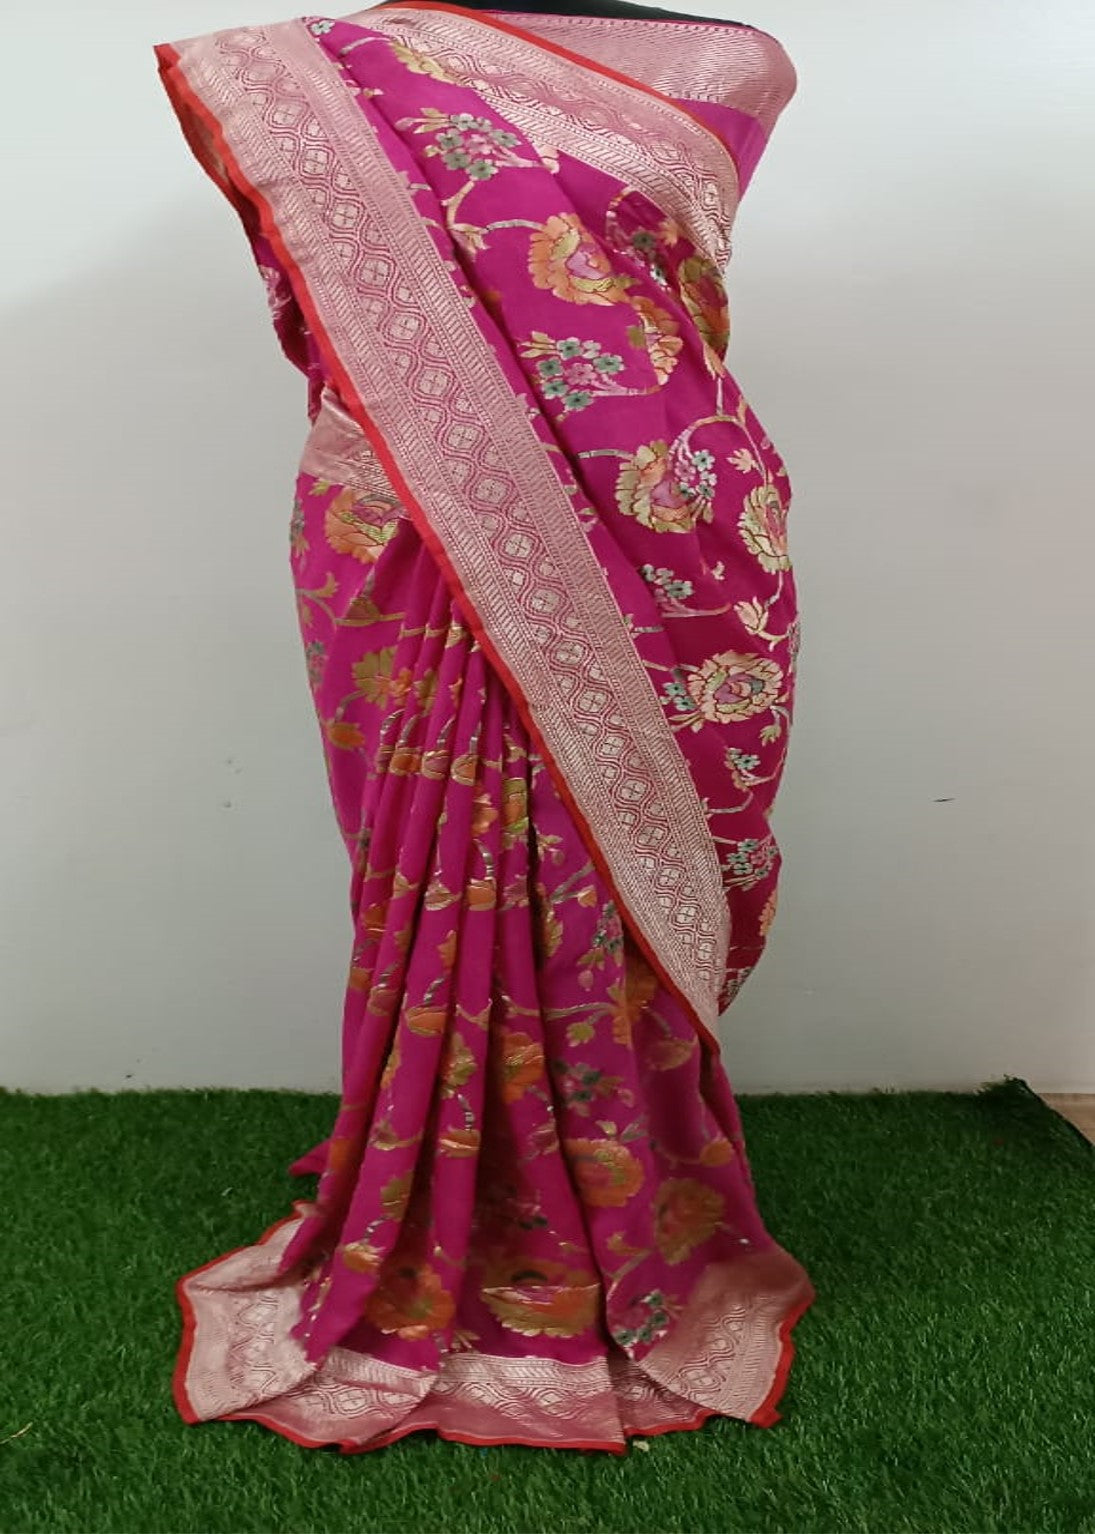 Hot Pink Pure Khaddi Georgette Banarasi Silk Saree - Floral Meenakari Sarees  - Banarasi Handwoven Pure Saree - SILK MARK CERTIFIED | Blouse piece,  Bottle green blouse, Saree floral